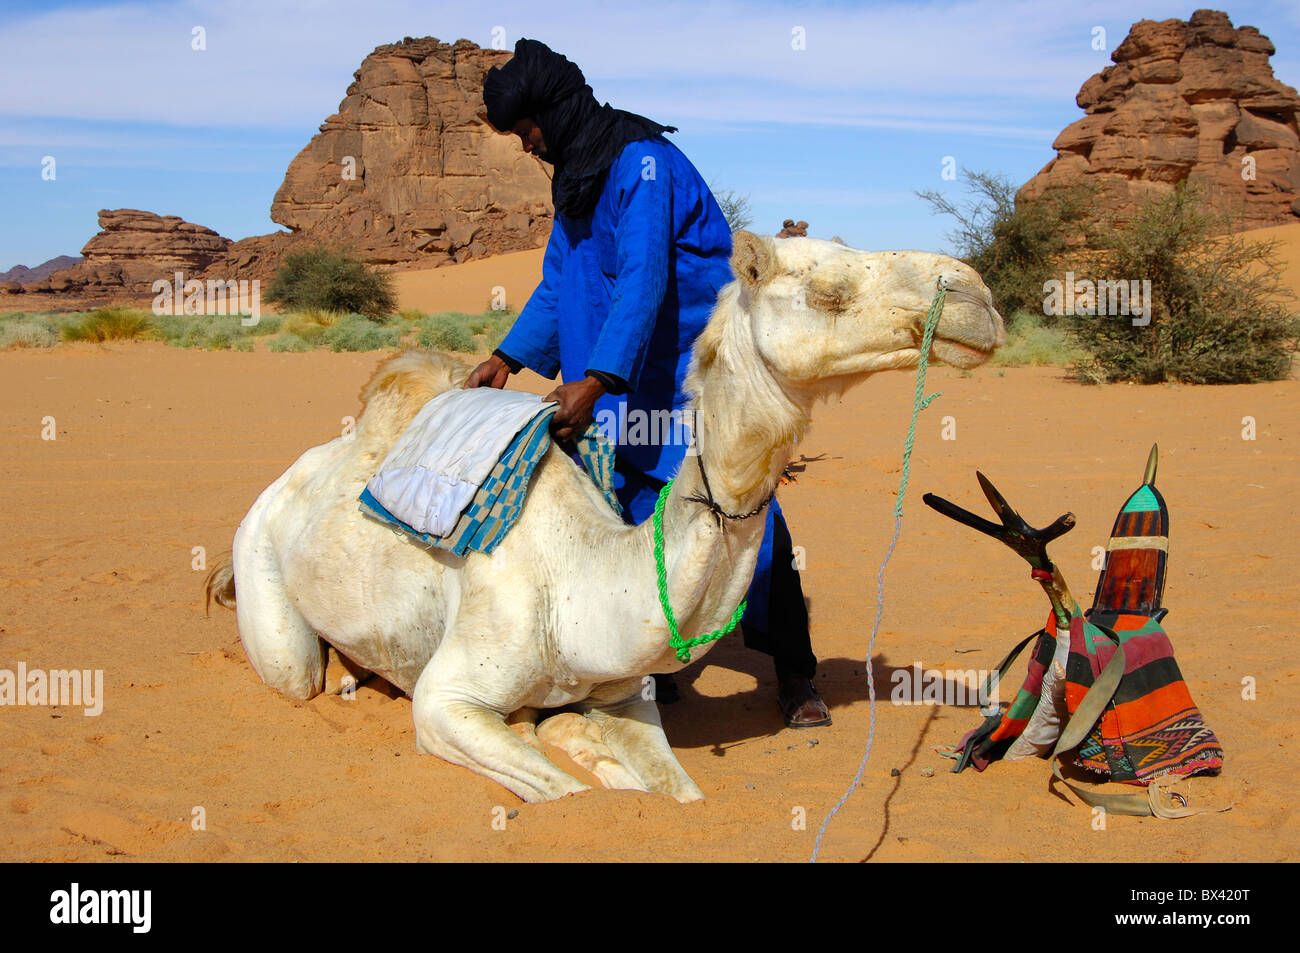 Les hommes touaregs de fixation de la selle sur le dos d'un dromadaire Méhari avant le parcours, désert du Sahara, la Libye Banque D'Images